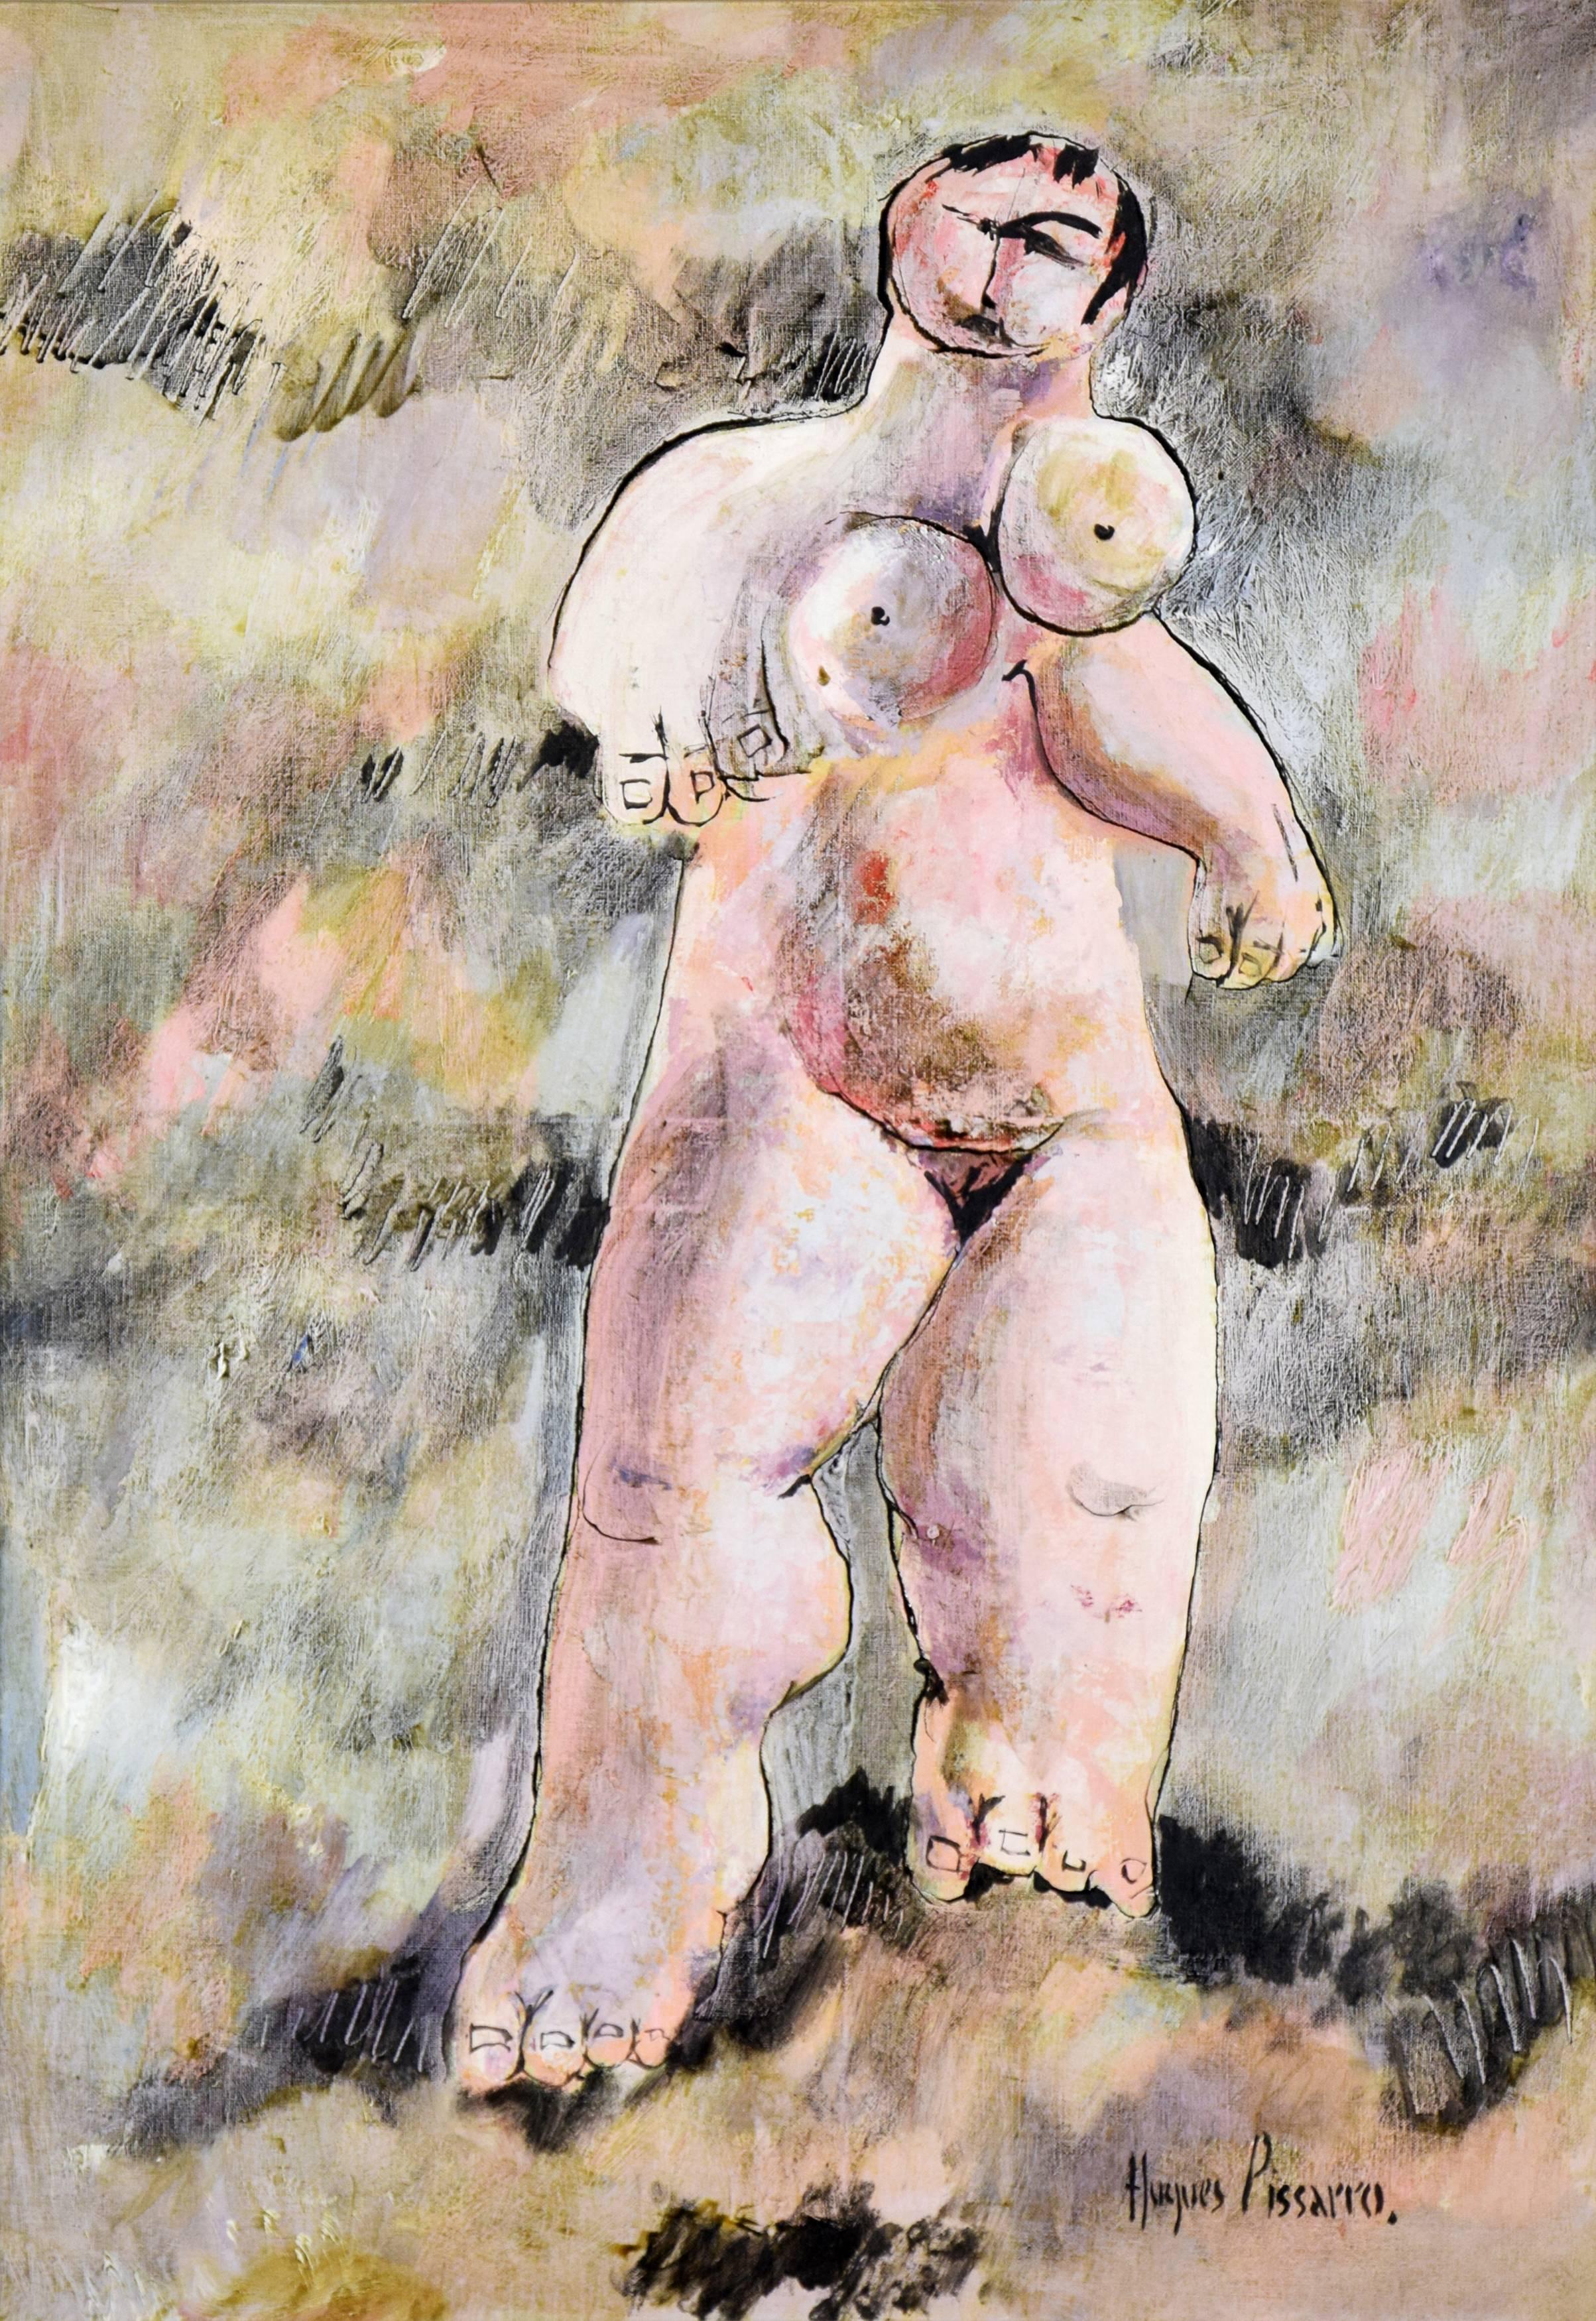 Nude Painting Hughes Claude Pissarro - Peinture Nue Debout de HUGUES PISSARRO - Peinture de nu, Figure humaine, Huile sur toile, Art